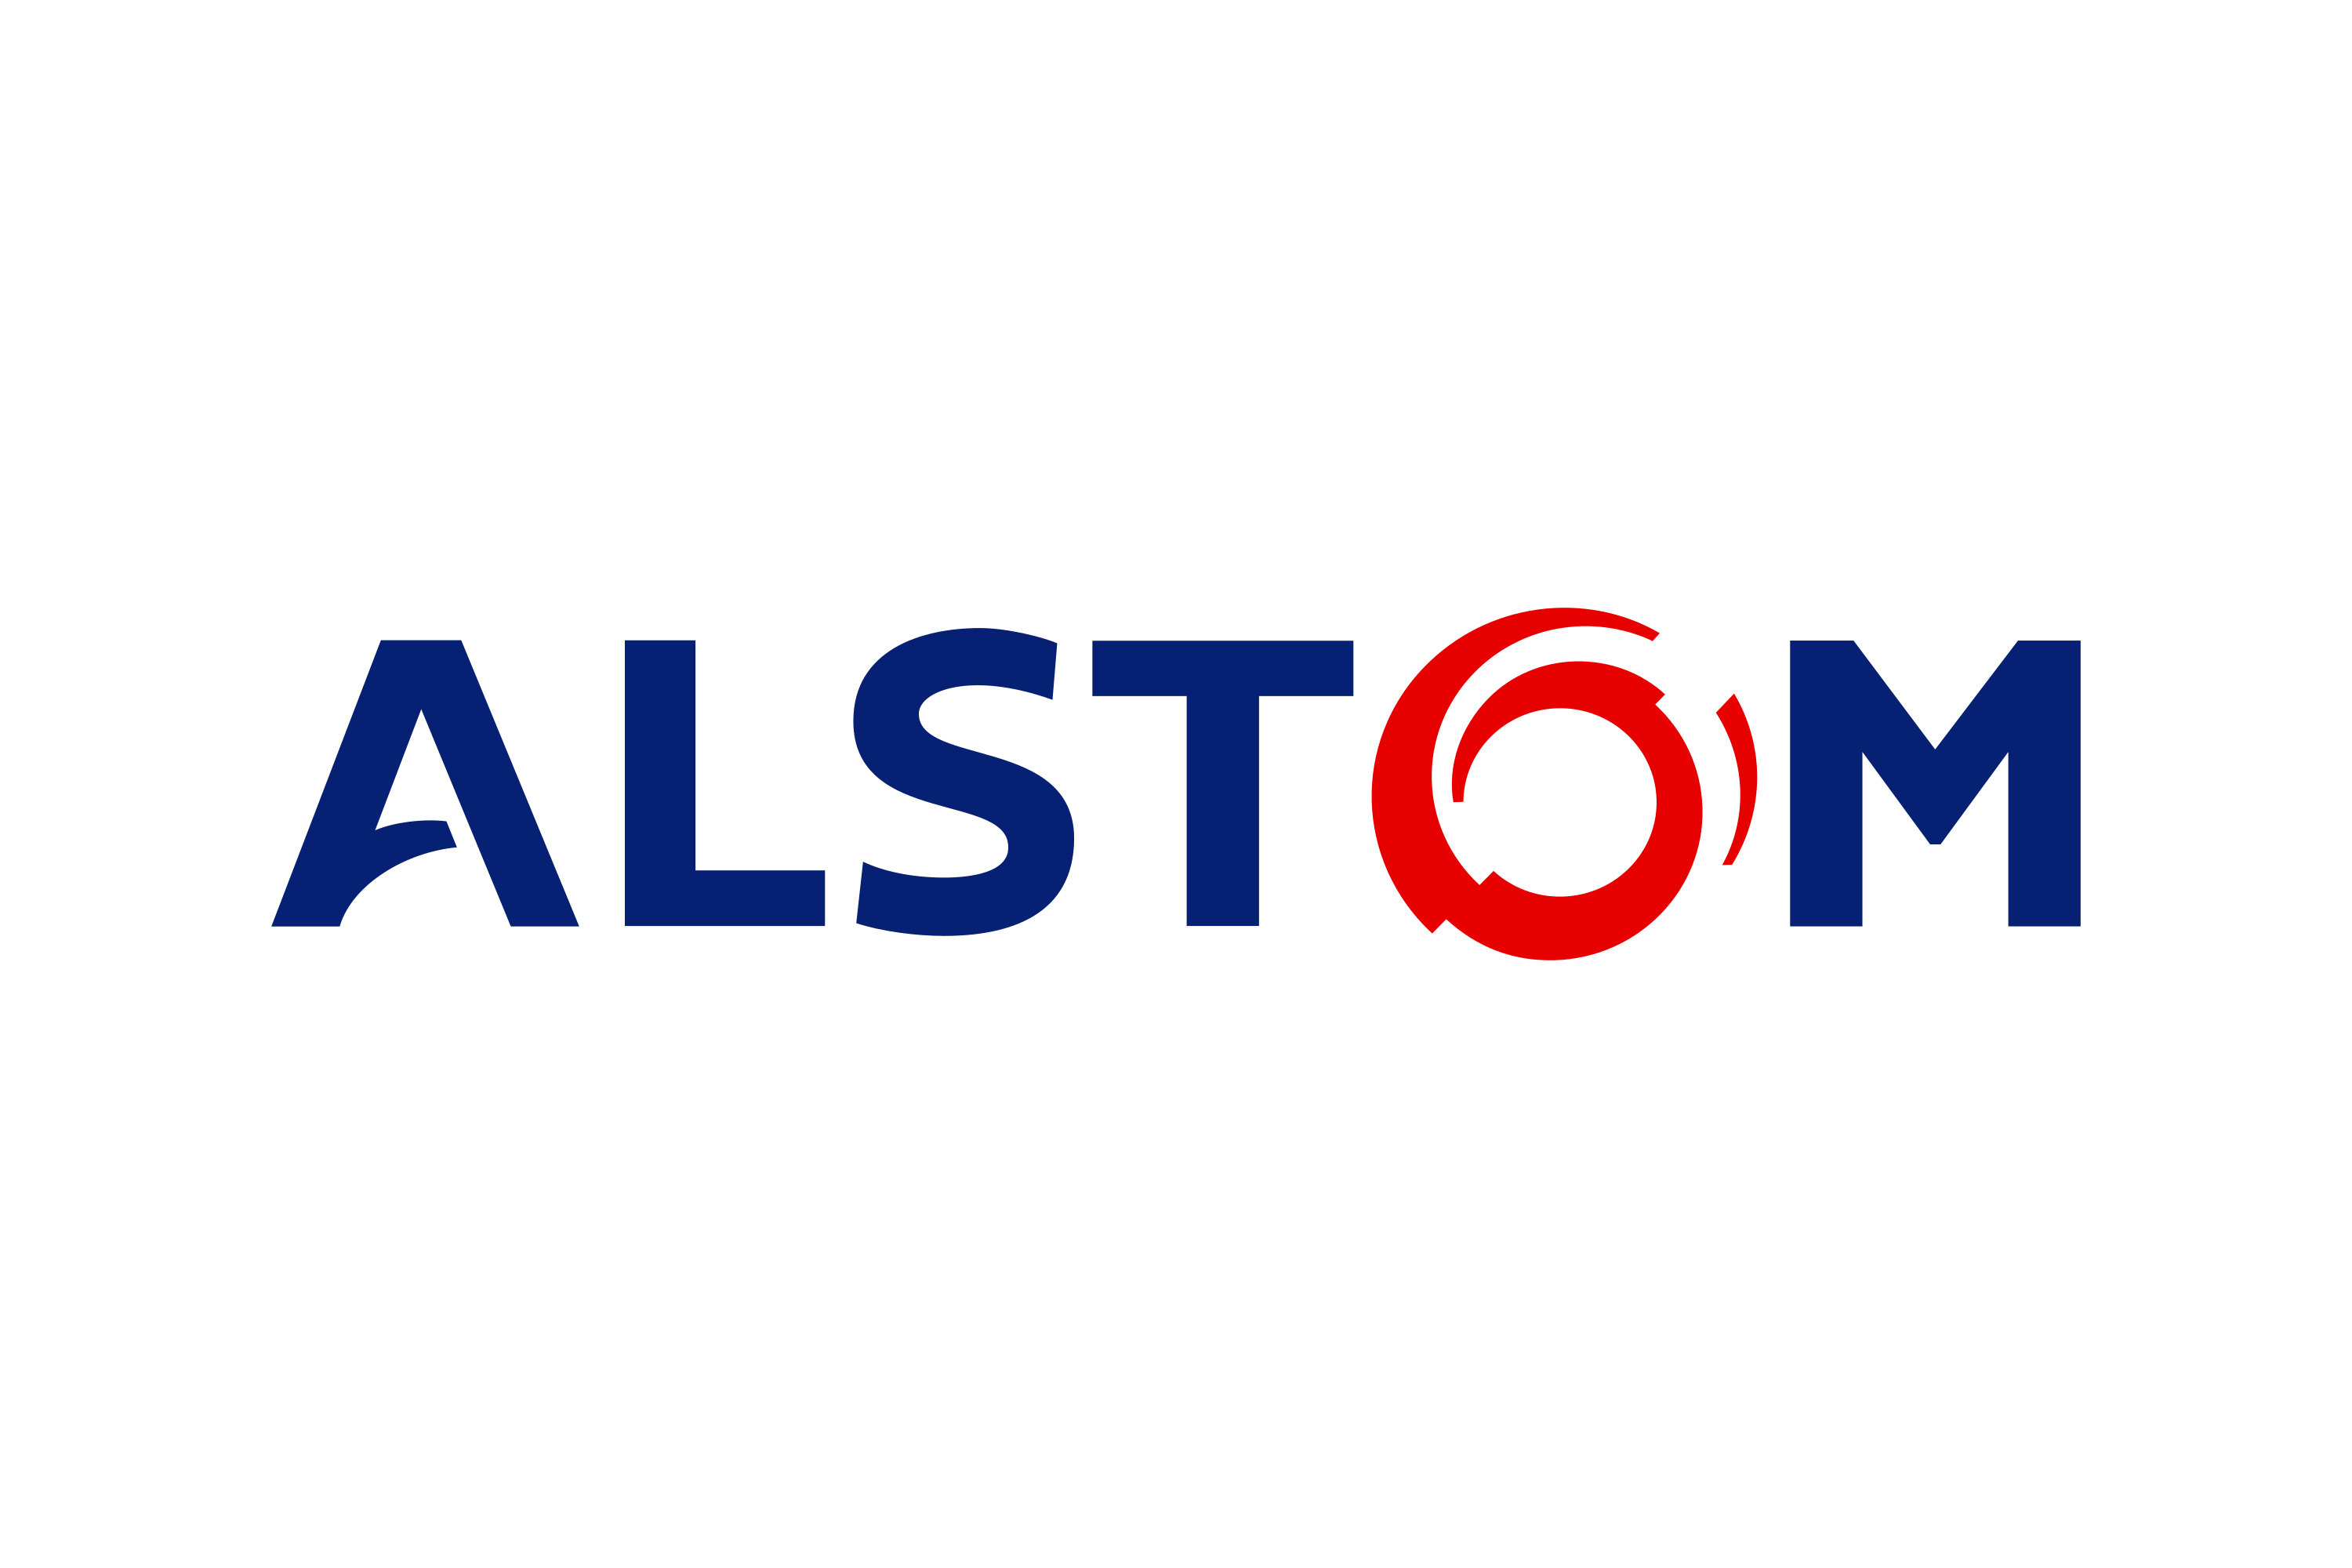 Download Alstom Logo In Svg Vector Or Png File Format Logo Wine